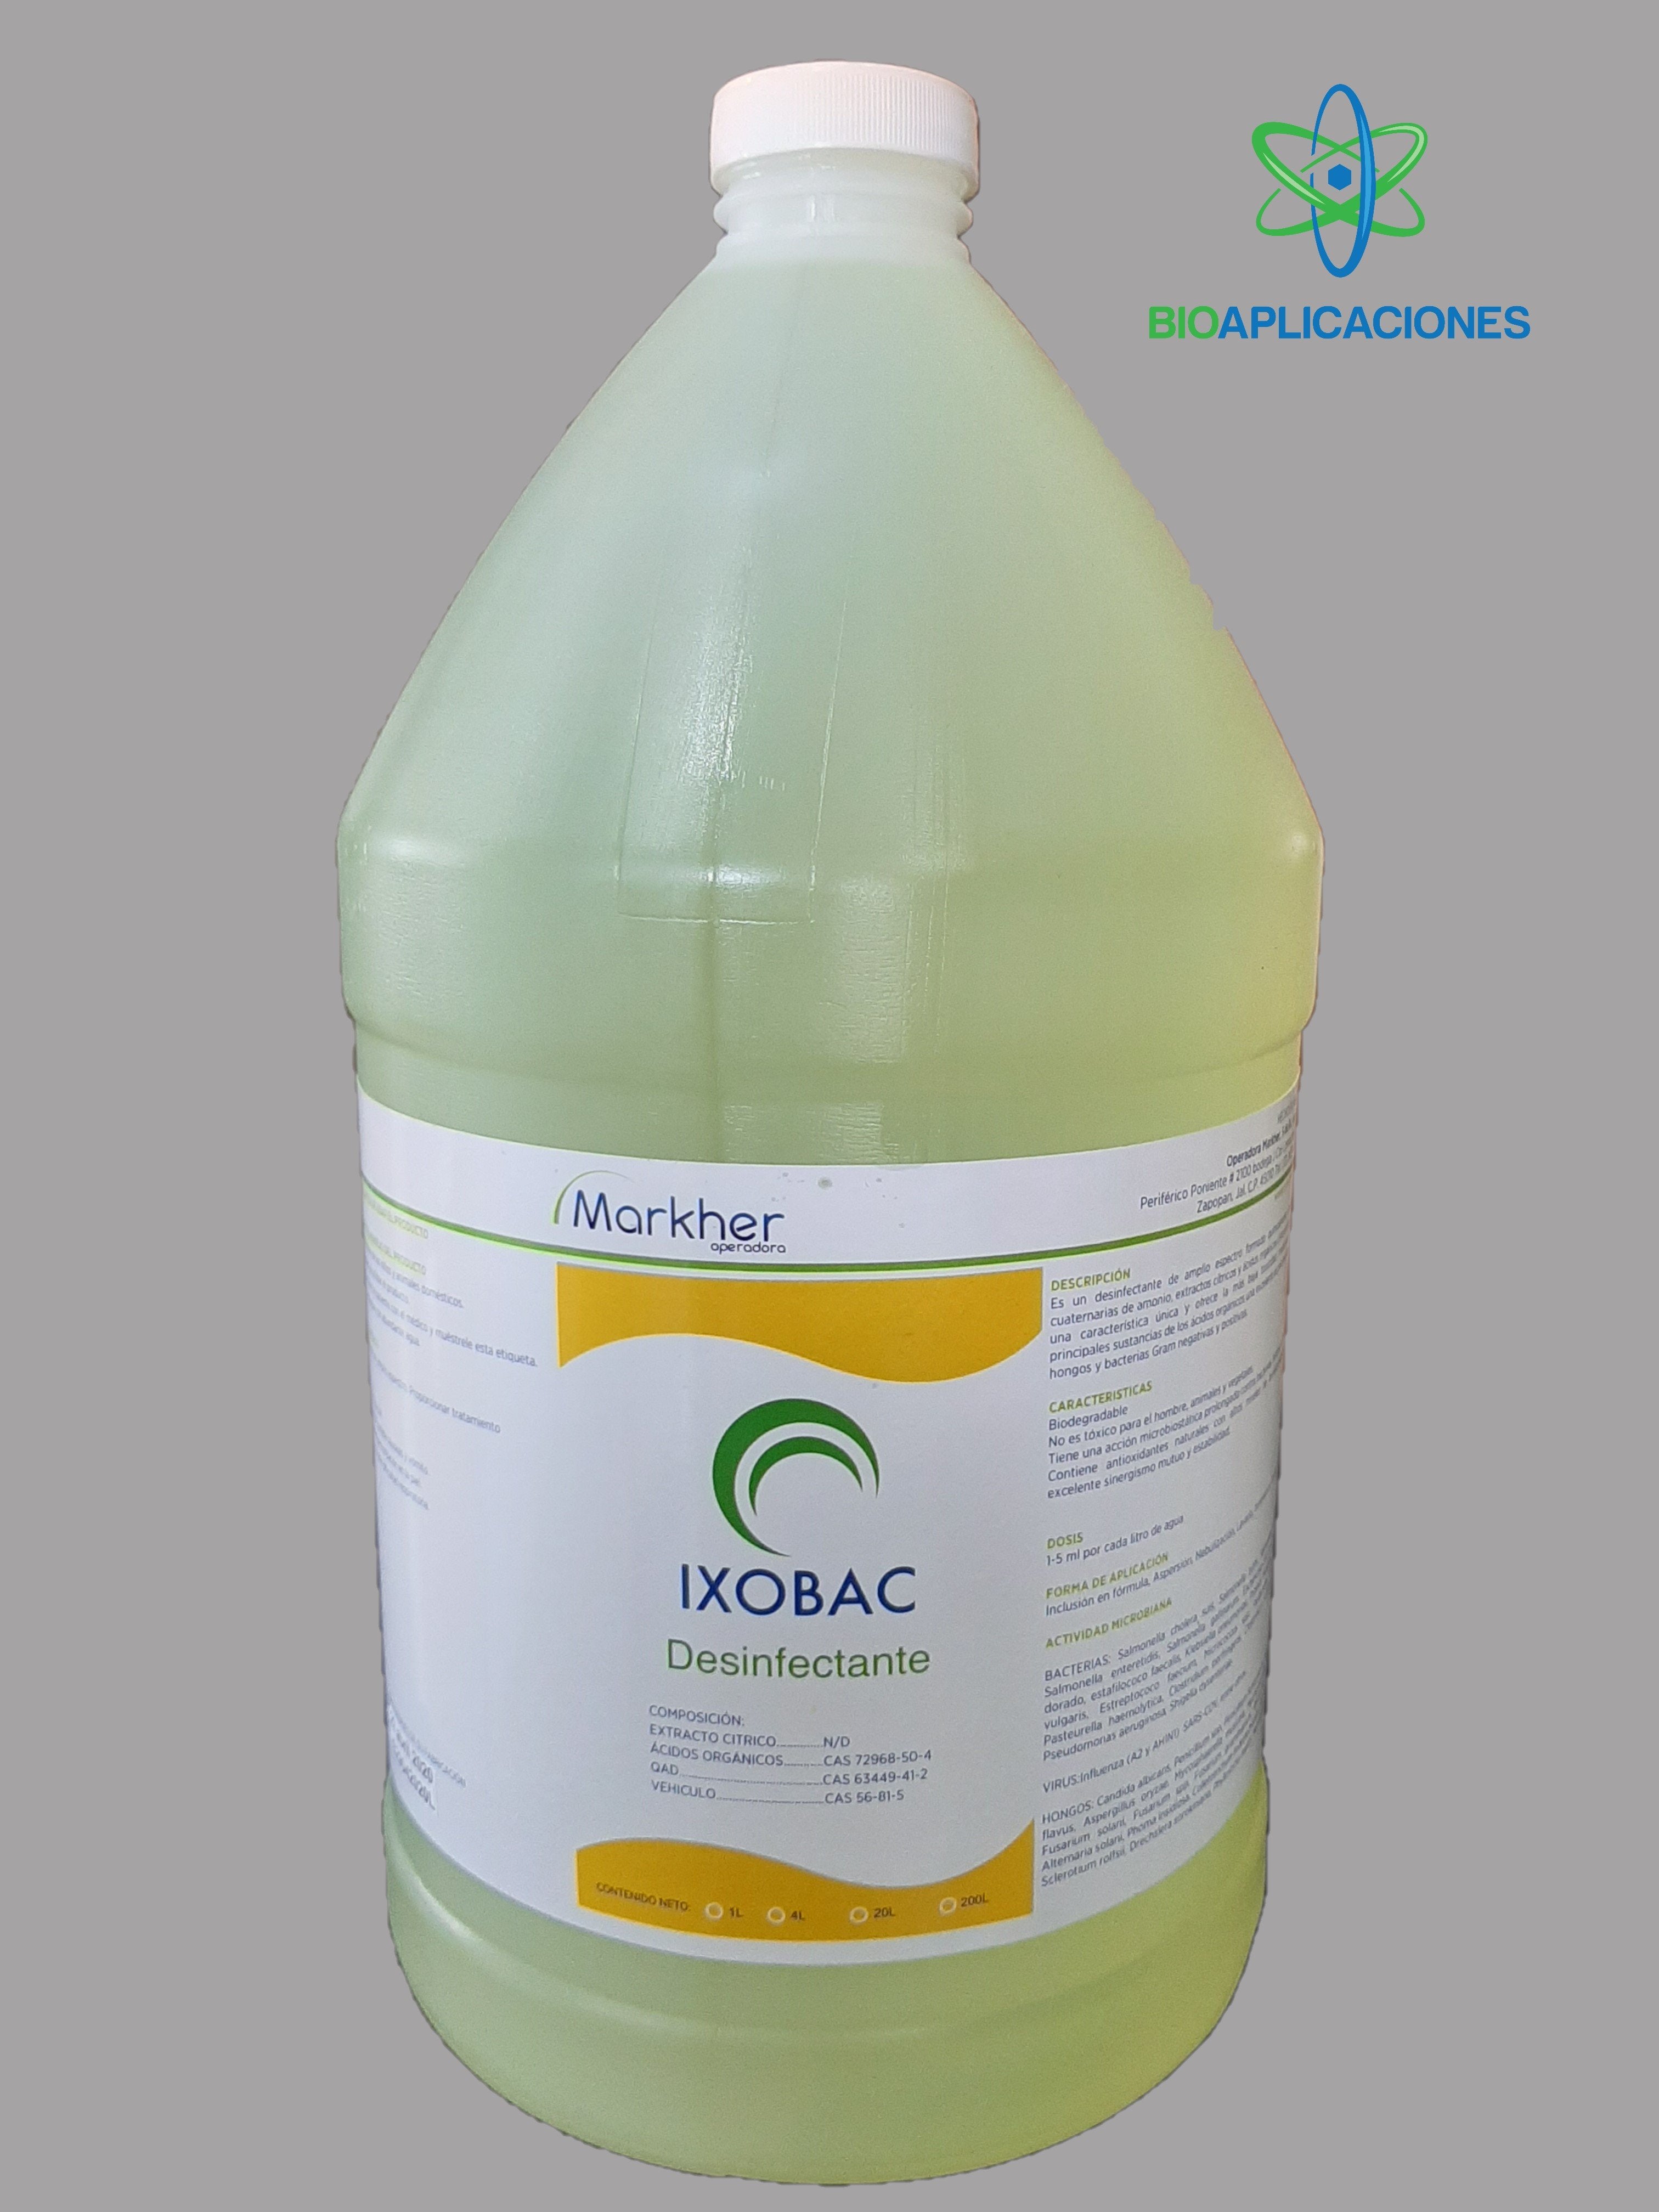 IXOBAC CONCENTRADO - Bioaplicaciones